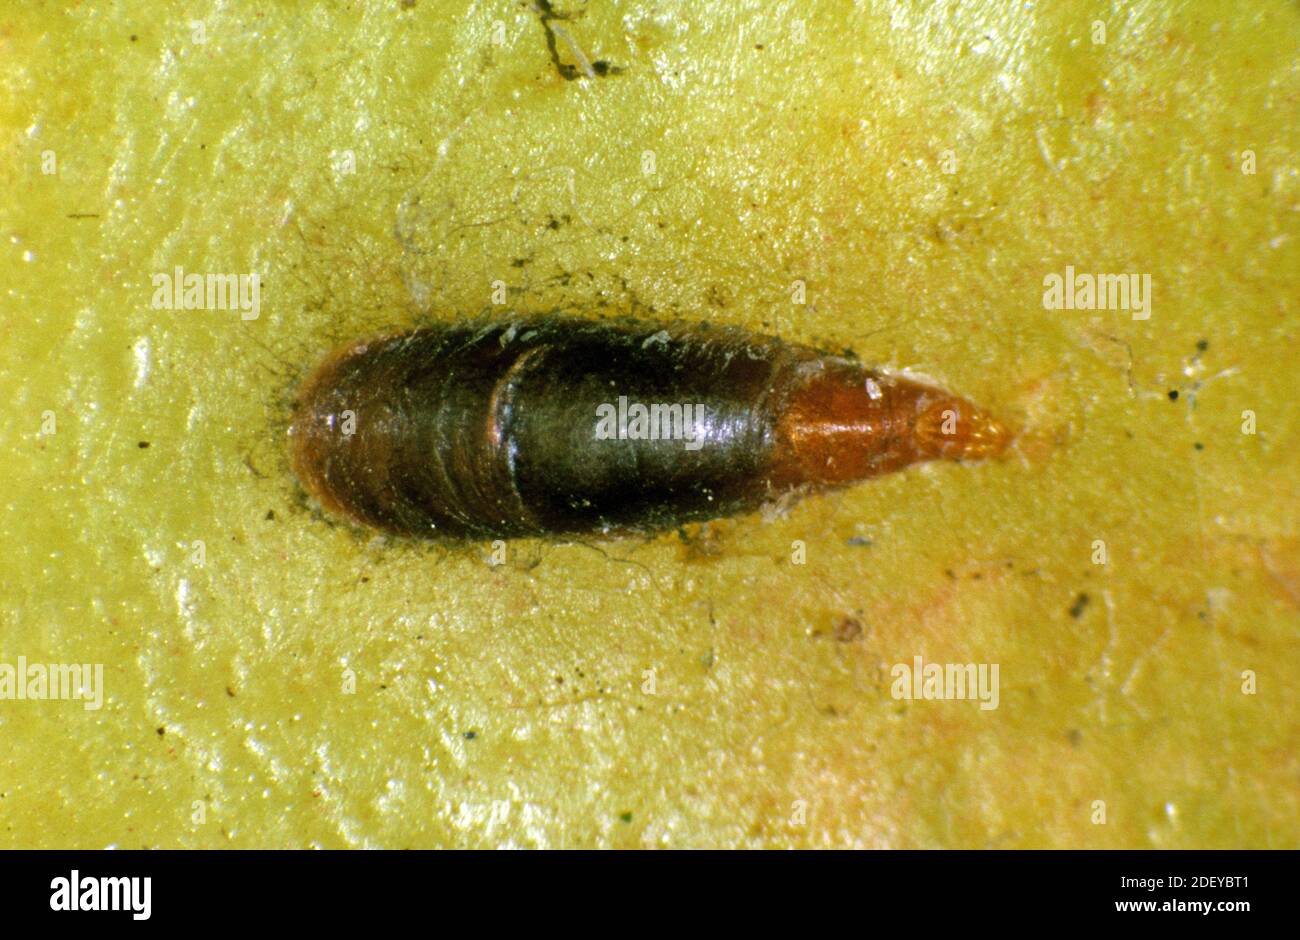 Échelle de la moule à pomme femelle adulte ou échelle de l'oystershell (Lepidosaphes ulmi) à la surface d'un fruit de pomme Banque D'Images